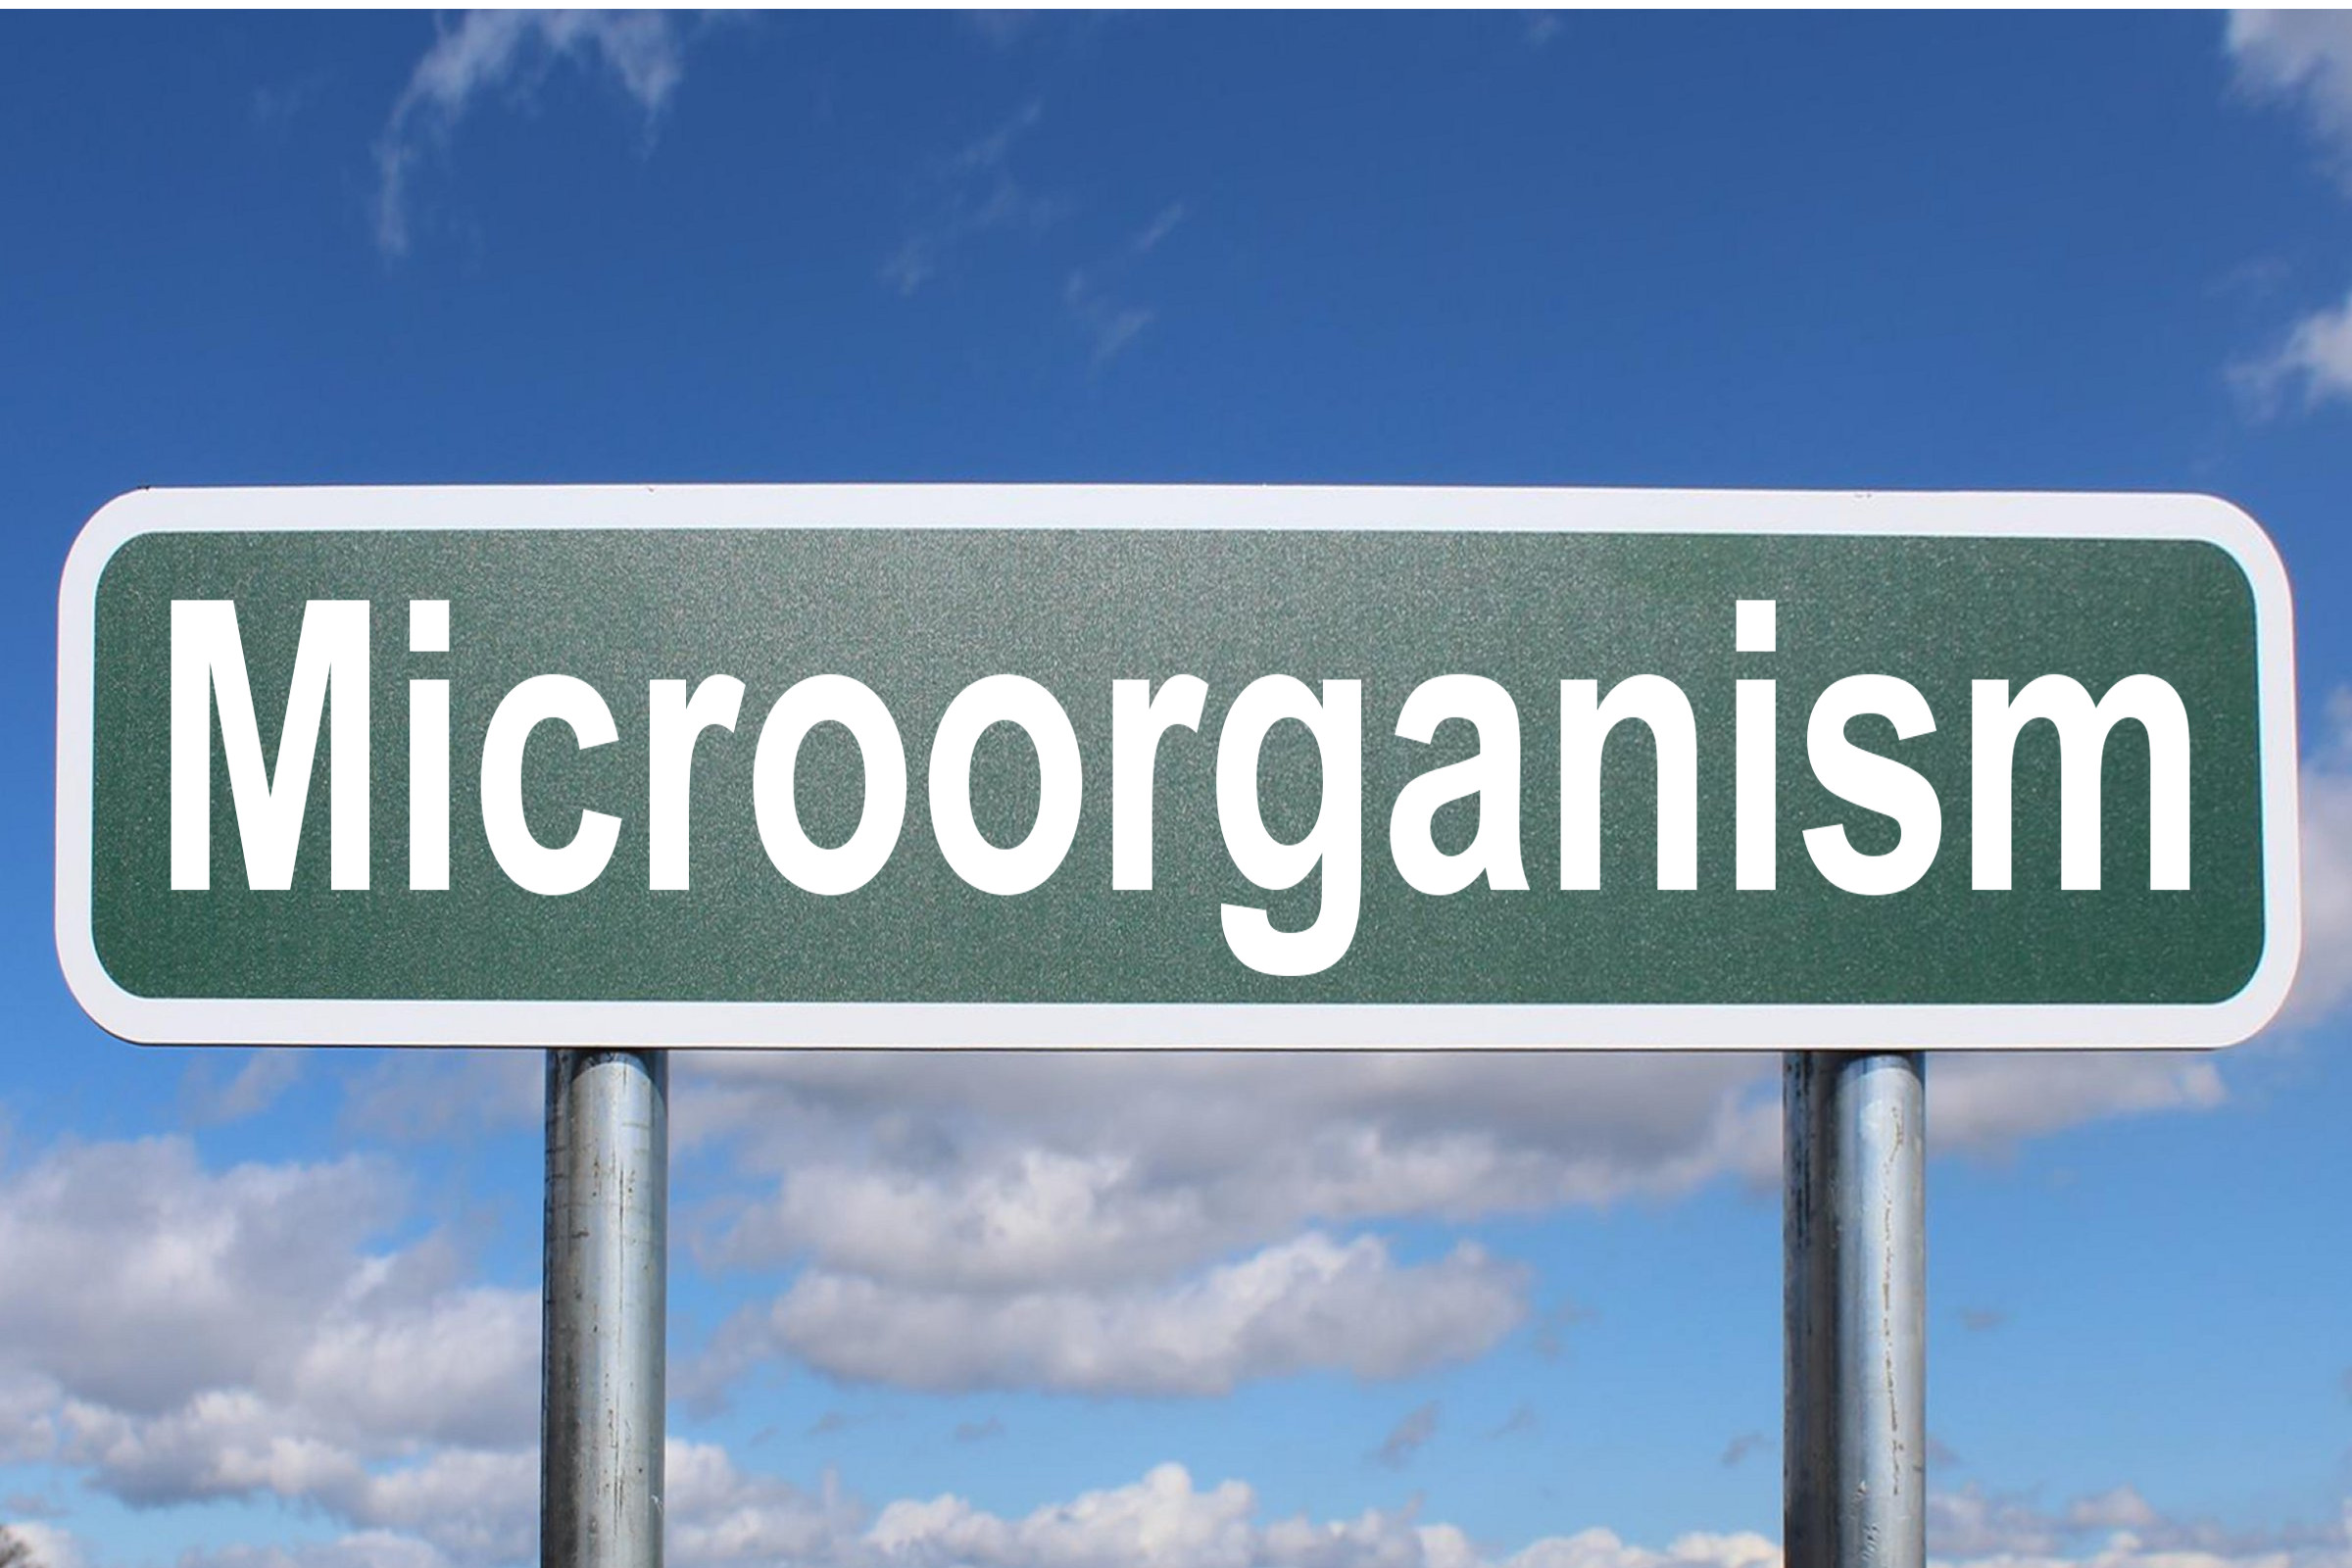 microorganism